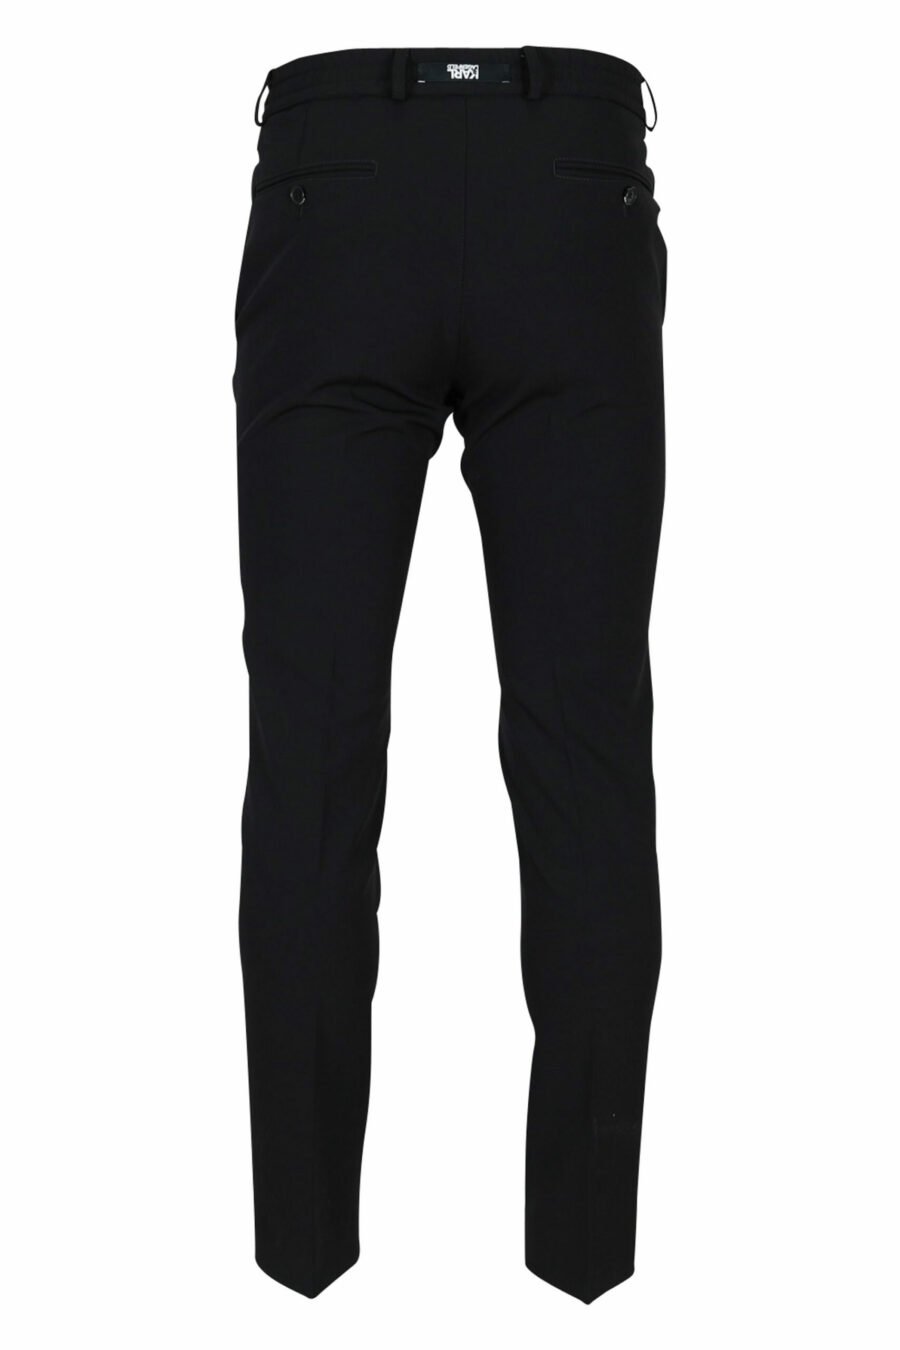 Pantalón negro con minilogo de goma - 4062226374224 2 scaled